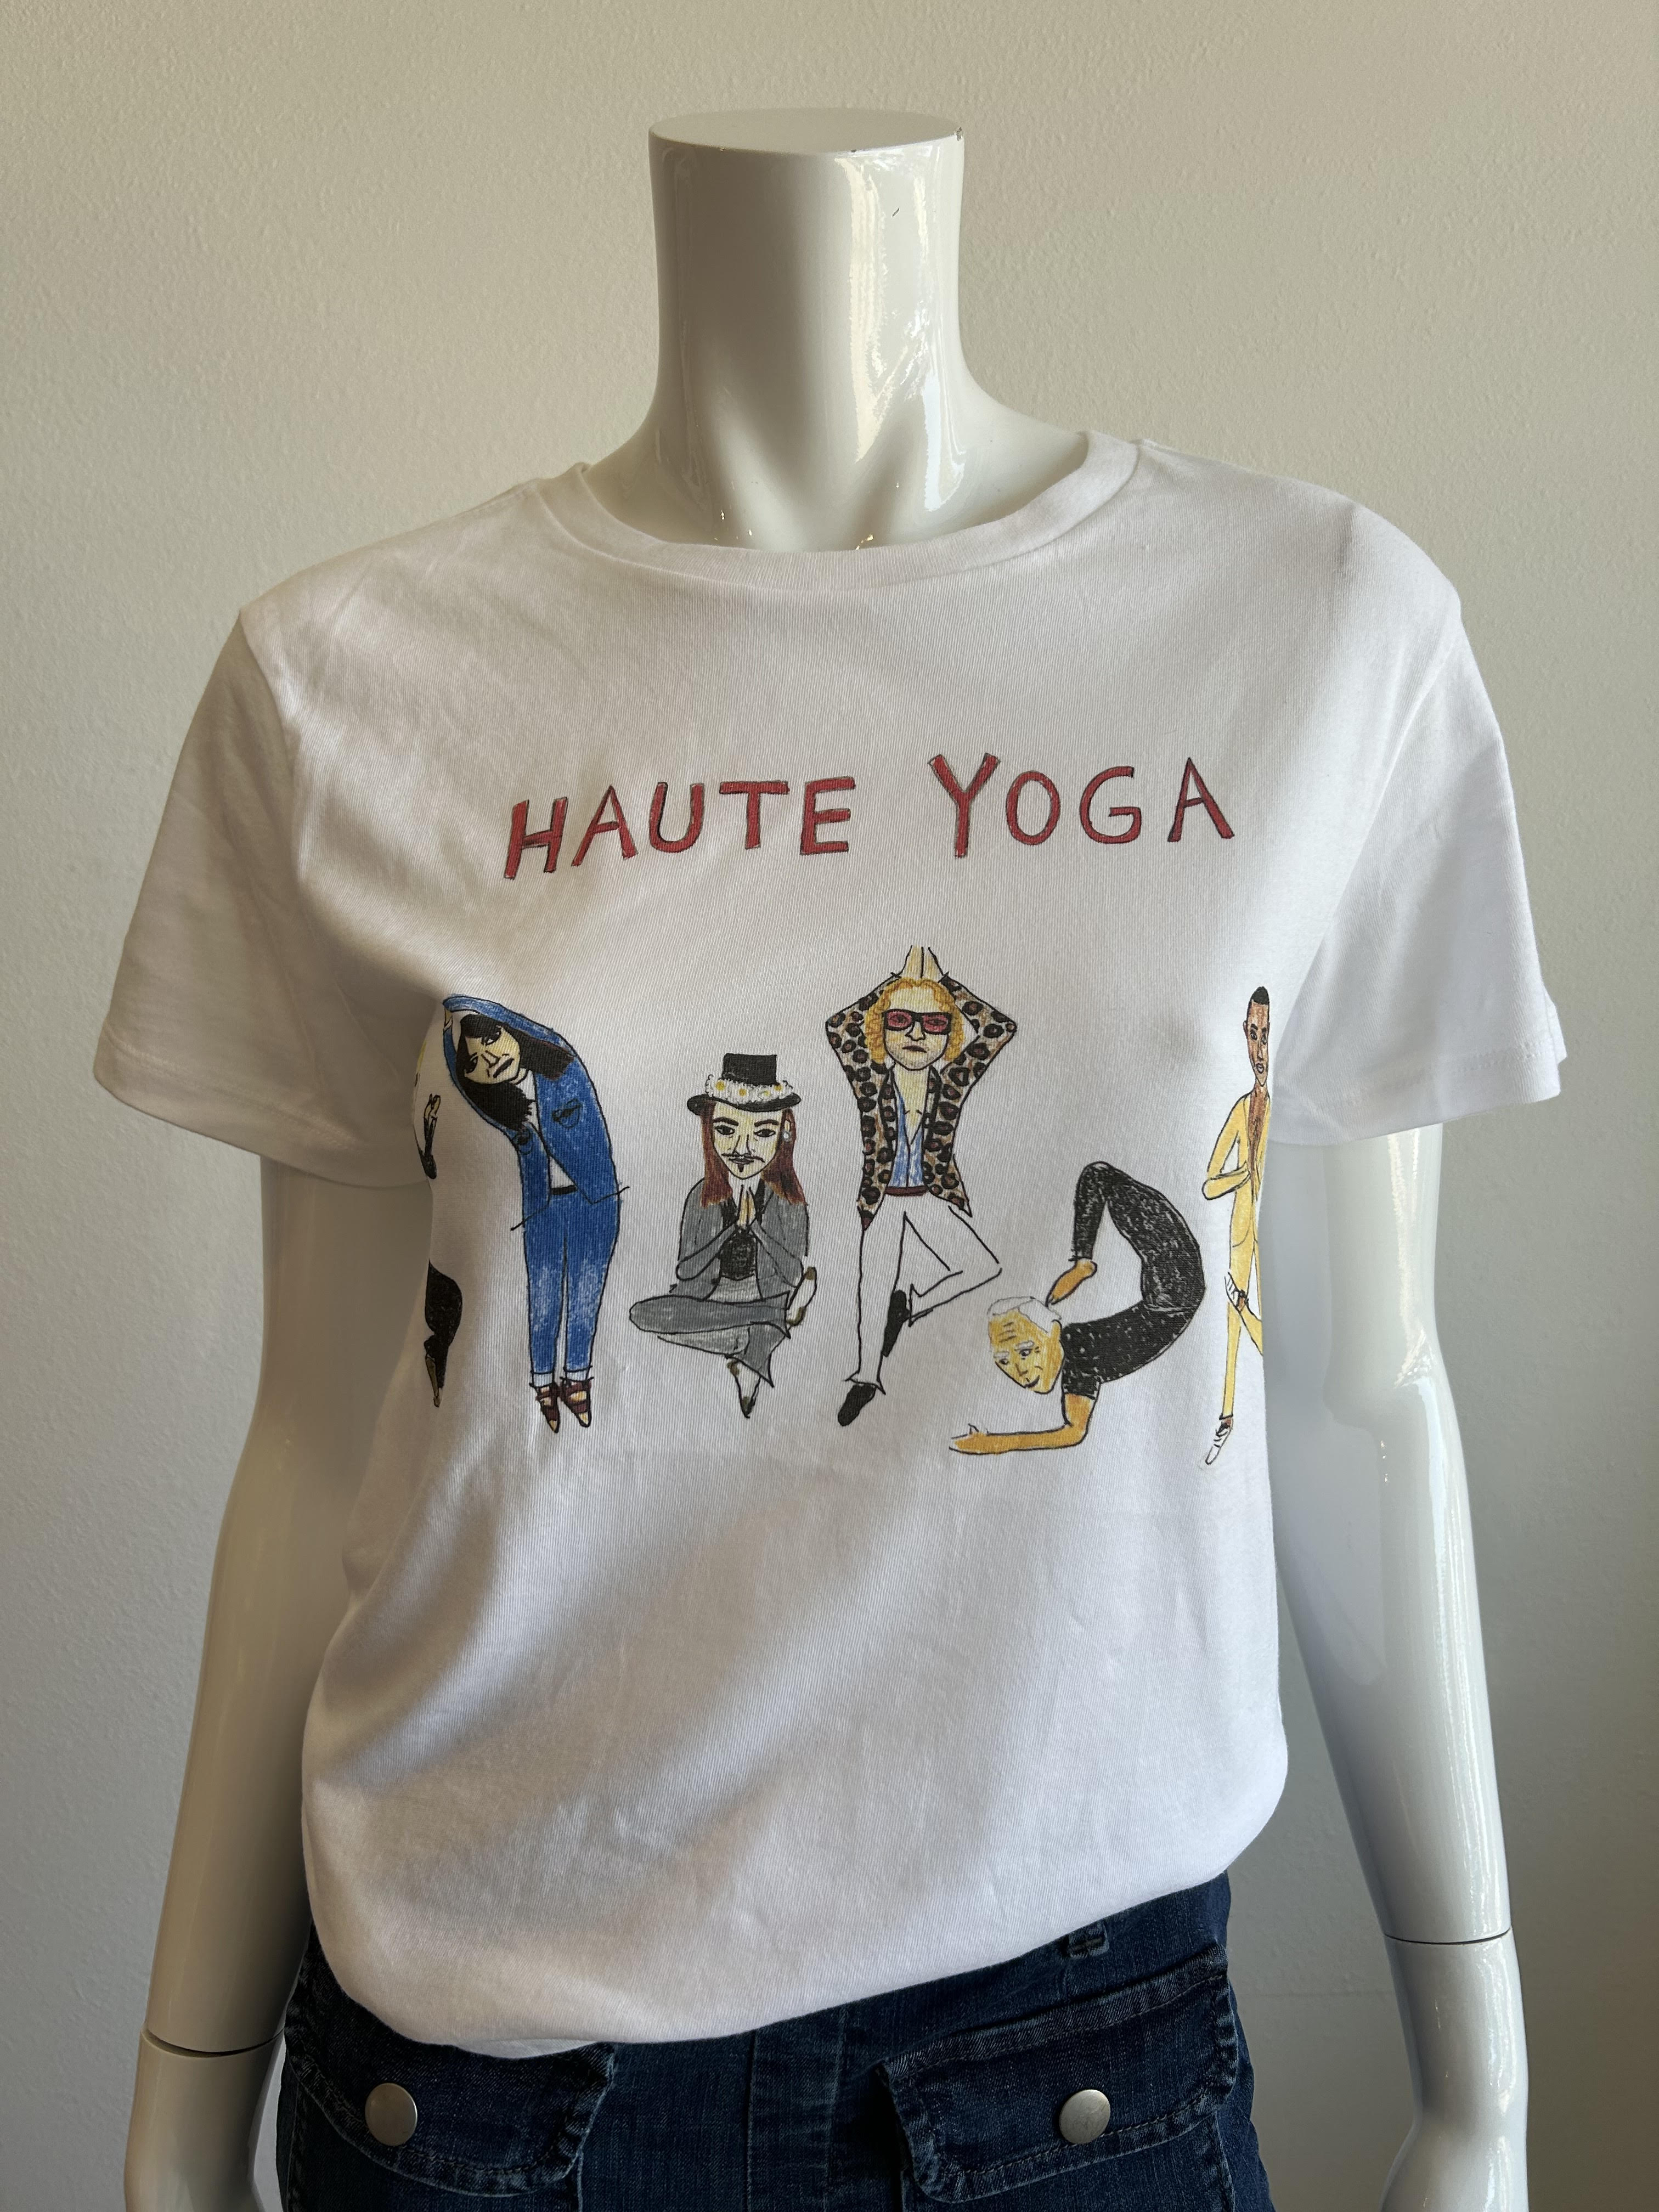 Haute Yoga Tote Bag – Unfortunate Portrait